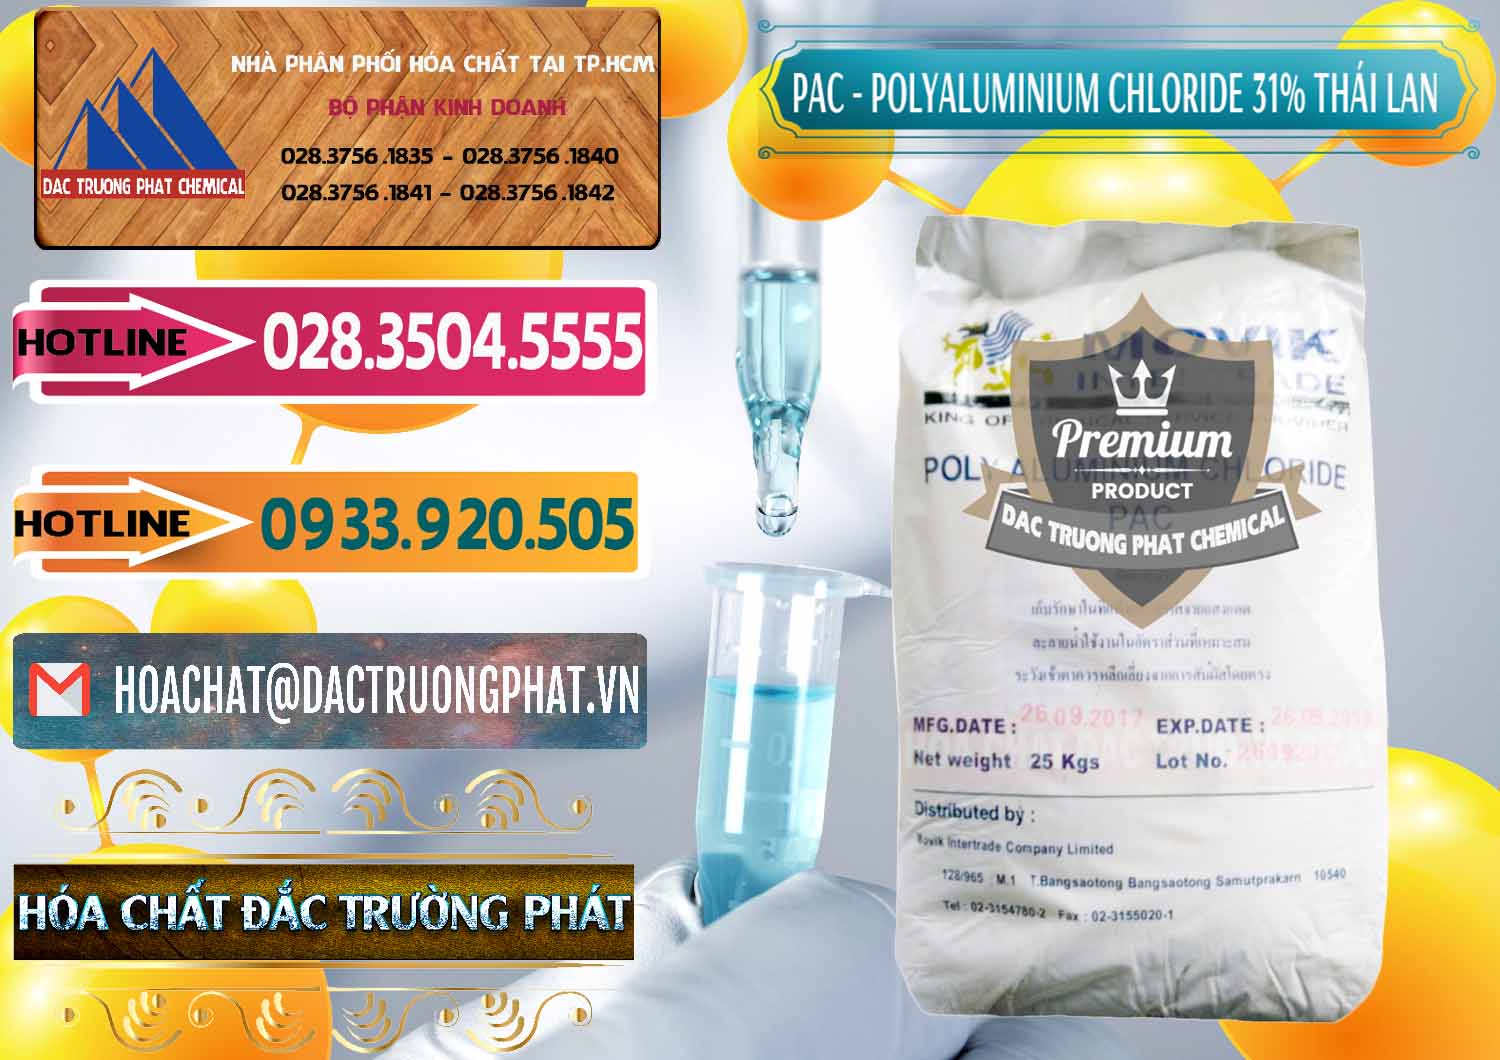 Cty kinh doanh _ bán PAC - Polyaluminium Chloride 31% Thái Lan Thailand - 0469 - Cty phân phối & cung cấp hóa chất tại TP.HCM - dactruongphat.vn